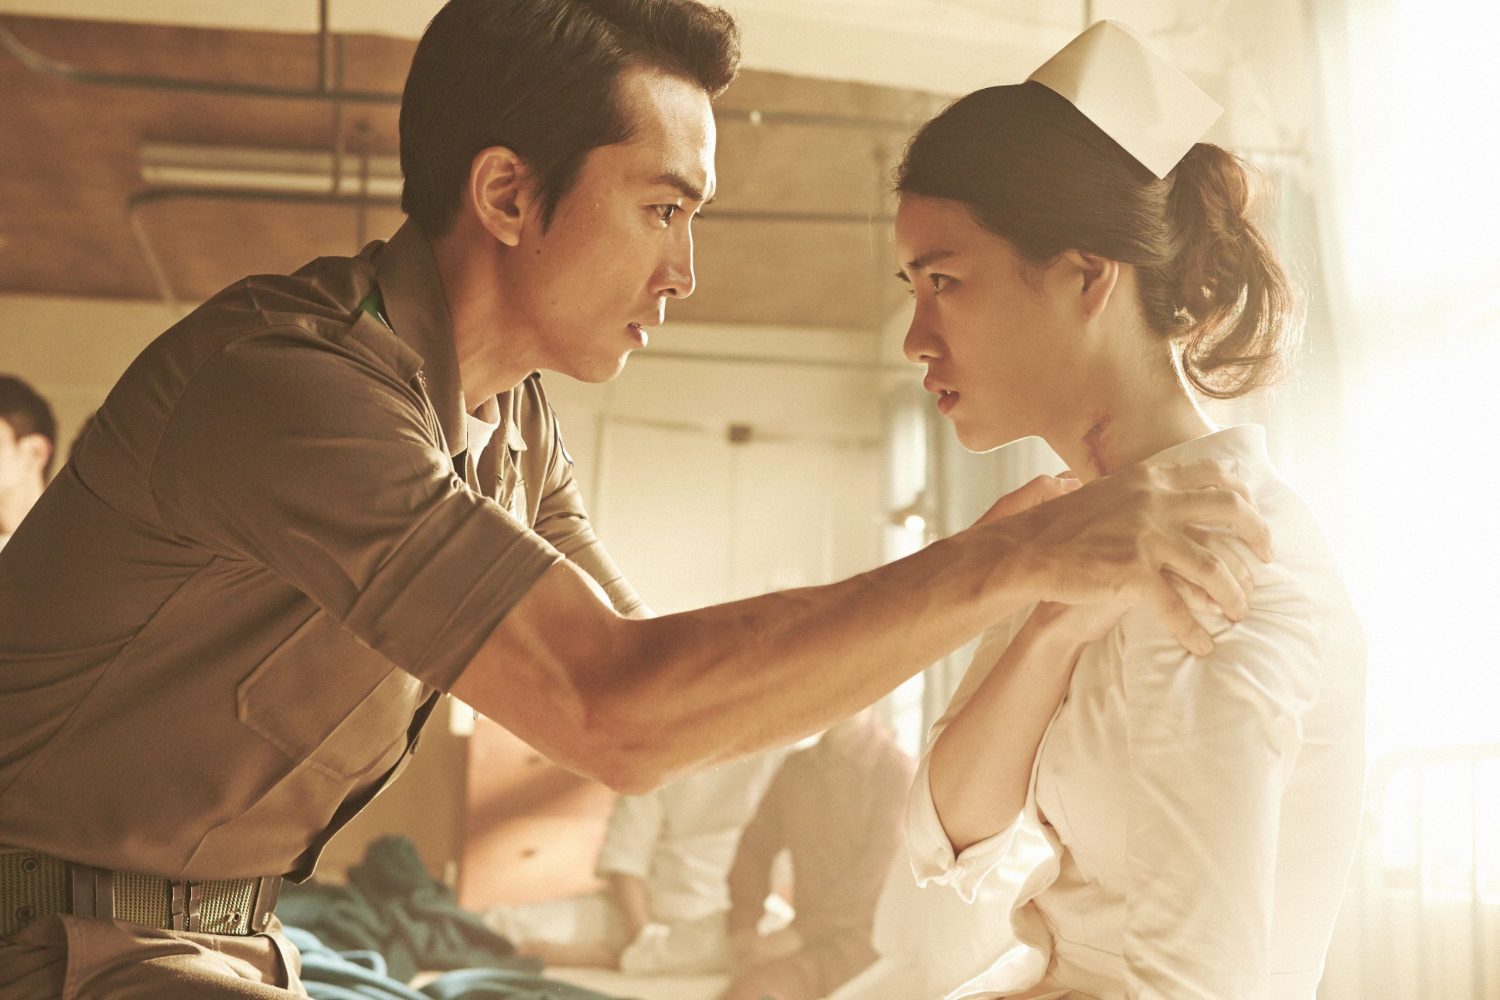 harper bazaar phim cua lim ji yeon 1 scaled e1658638220681 - 8 bộ phim gây sự chú ý của “nữ hoàng cảnh nóng” Lim Ji Yeon